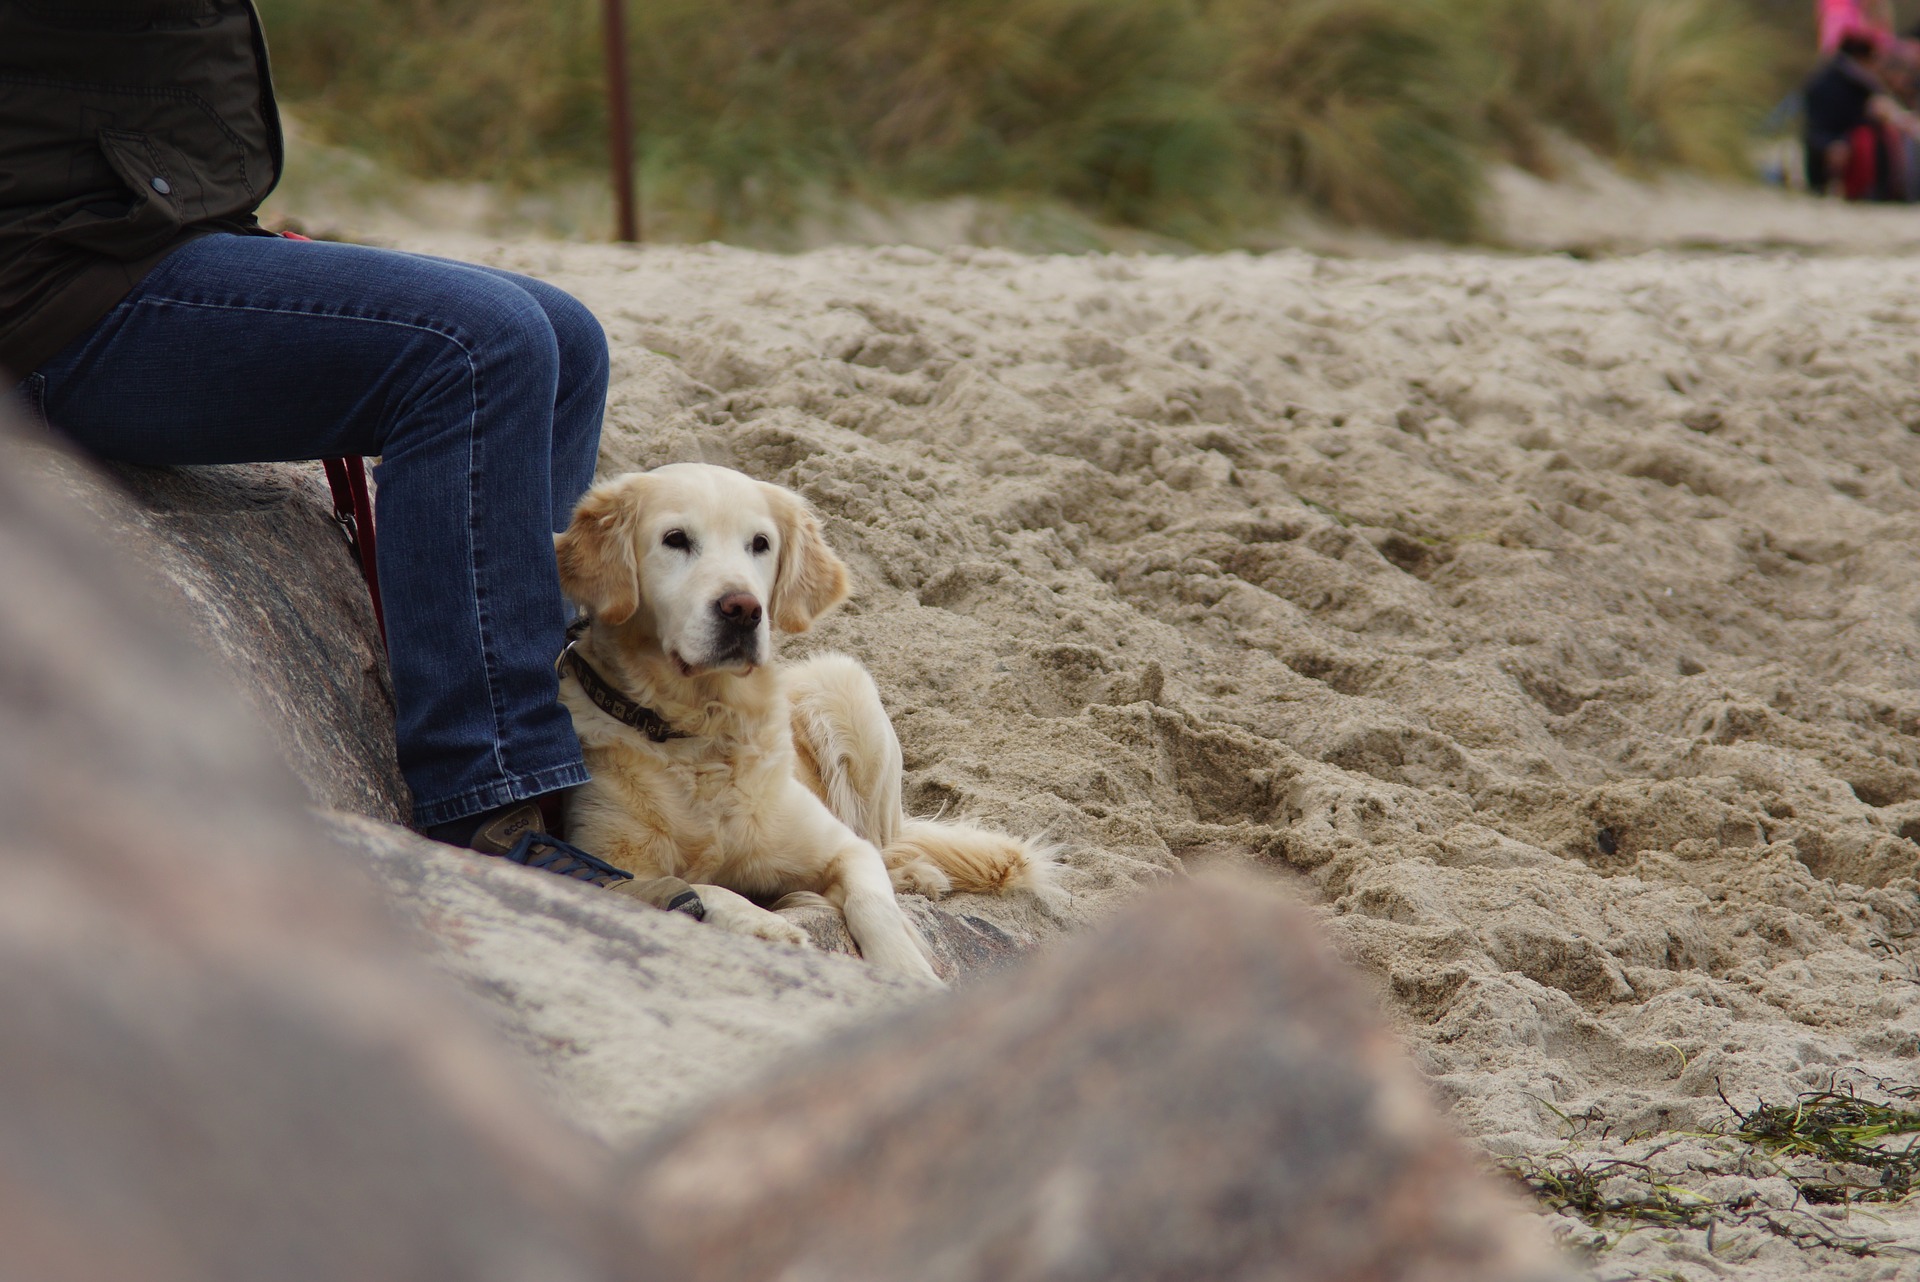 Feet dog. Собака в песке. Собака на пляже. Фотосессия собак на песке весной. Фотосессия с собакой на пляже.